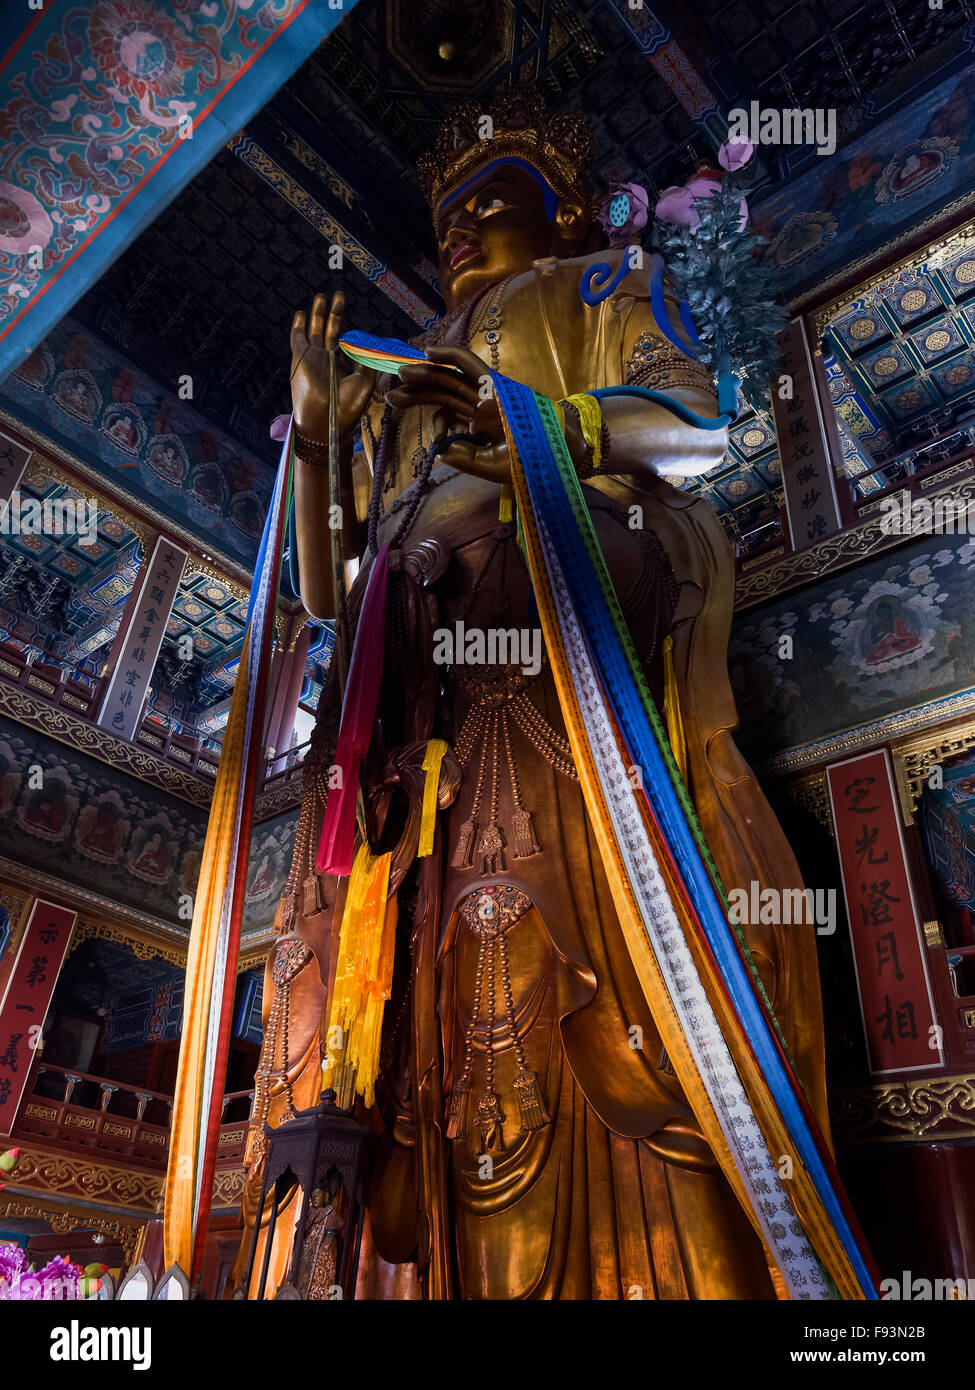 Statua di Buddha nel tempio Lama Yonghe Gong, Pechino, Cina, Asia Foto Stock